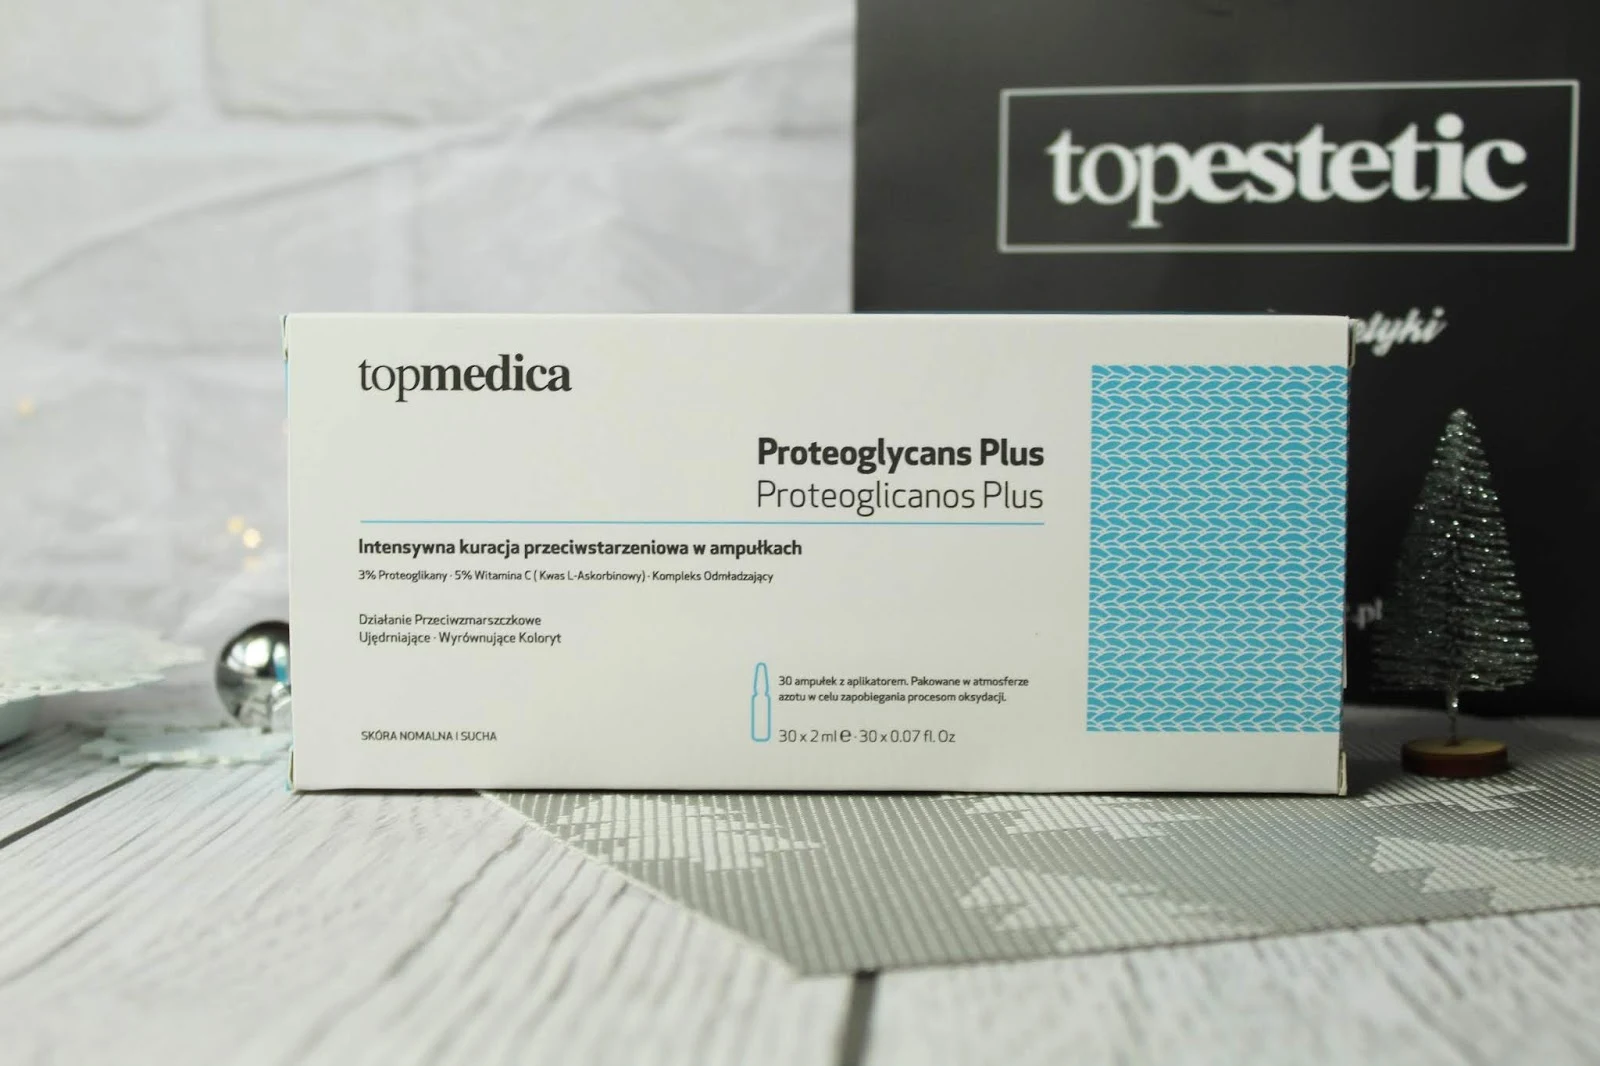 Proteoglycans Plus topmedica - intensywna pielęgnacja przeciwstarzeniowa w kapsułkach